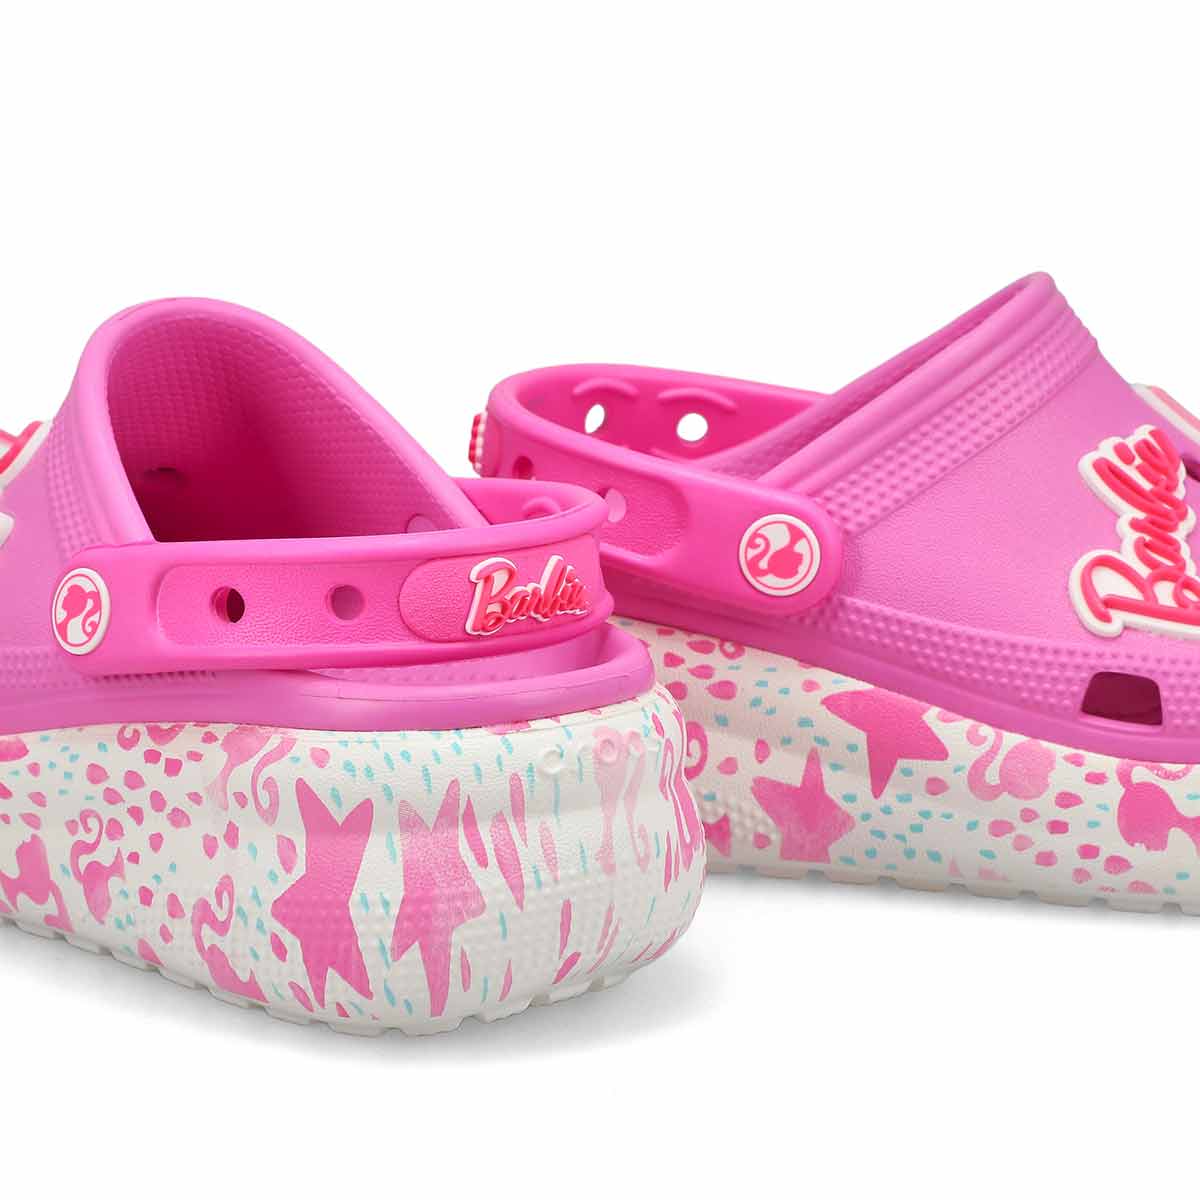 Crocs Kids' Barbie Cutie Crush Clog - Taffy | SoftMoc.com